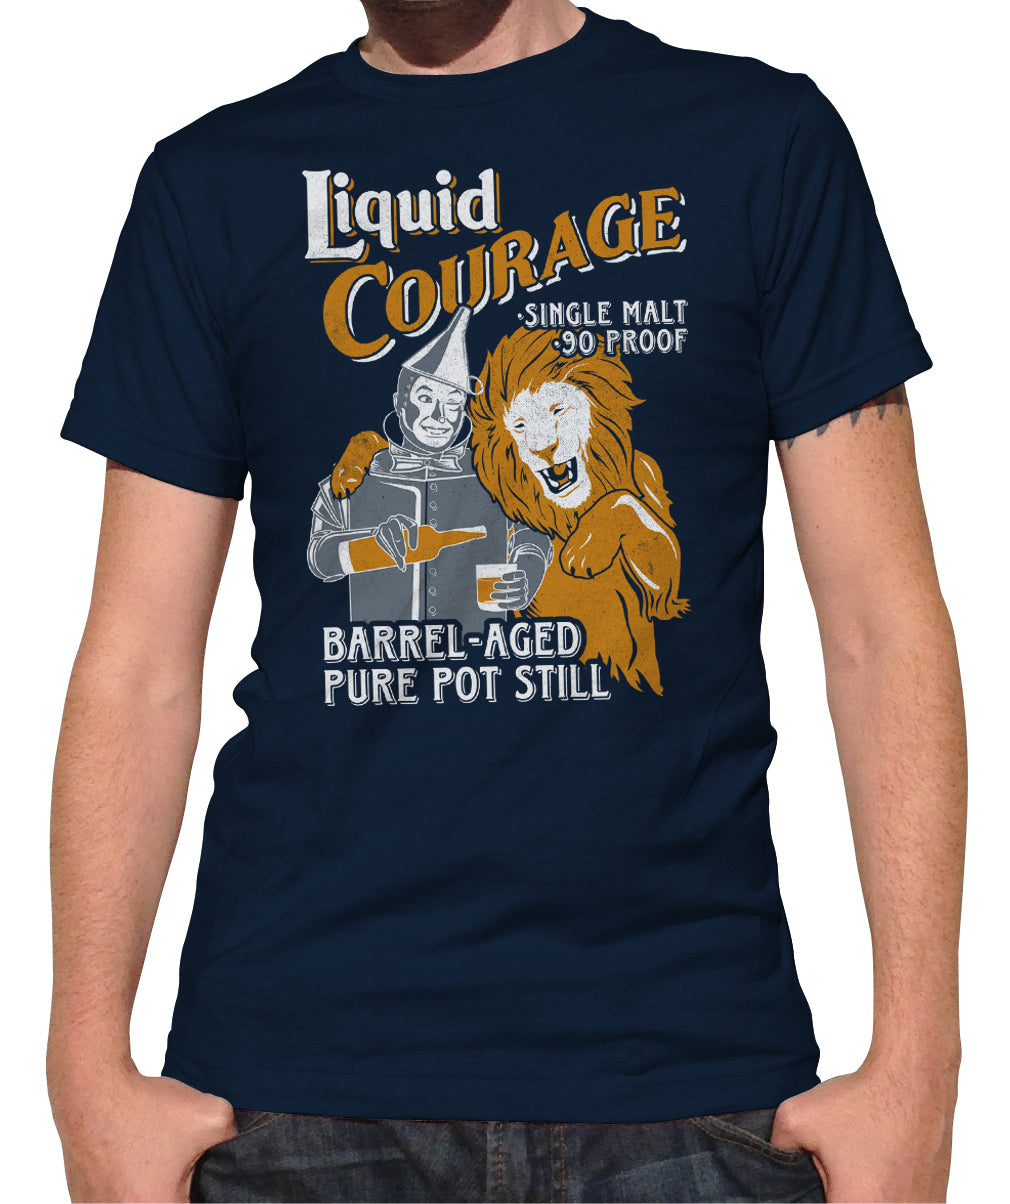 Men's Liquid Courage T-Shirt - By Ex-Boyfriend